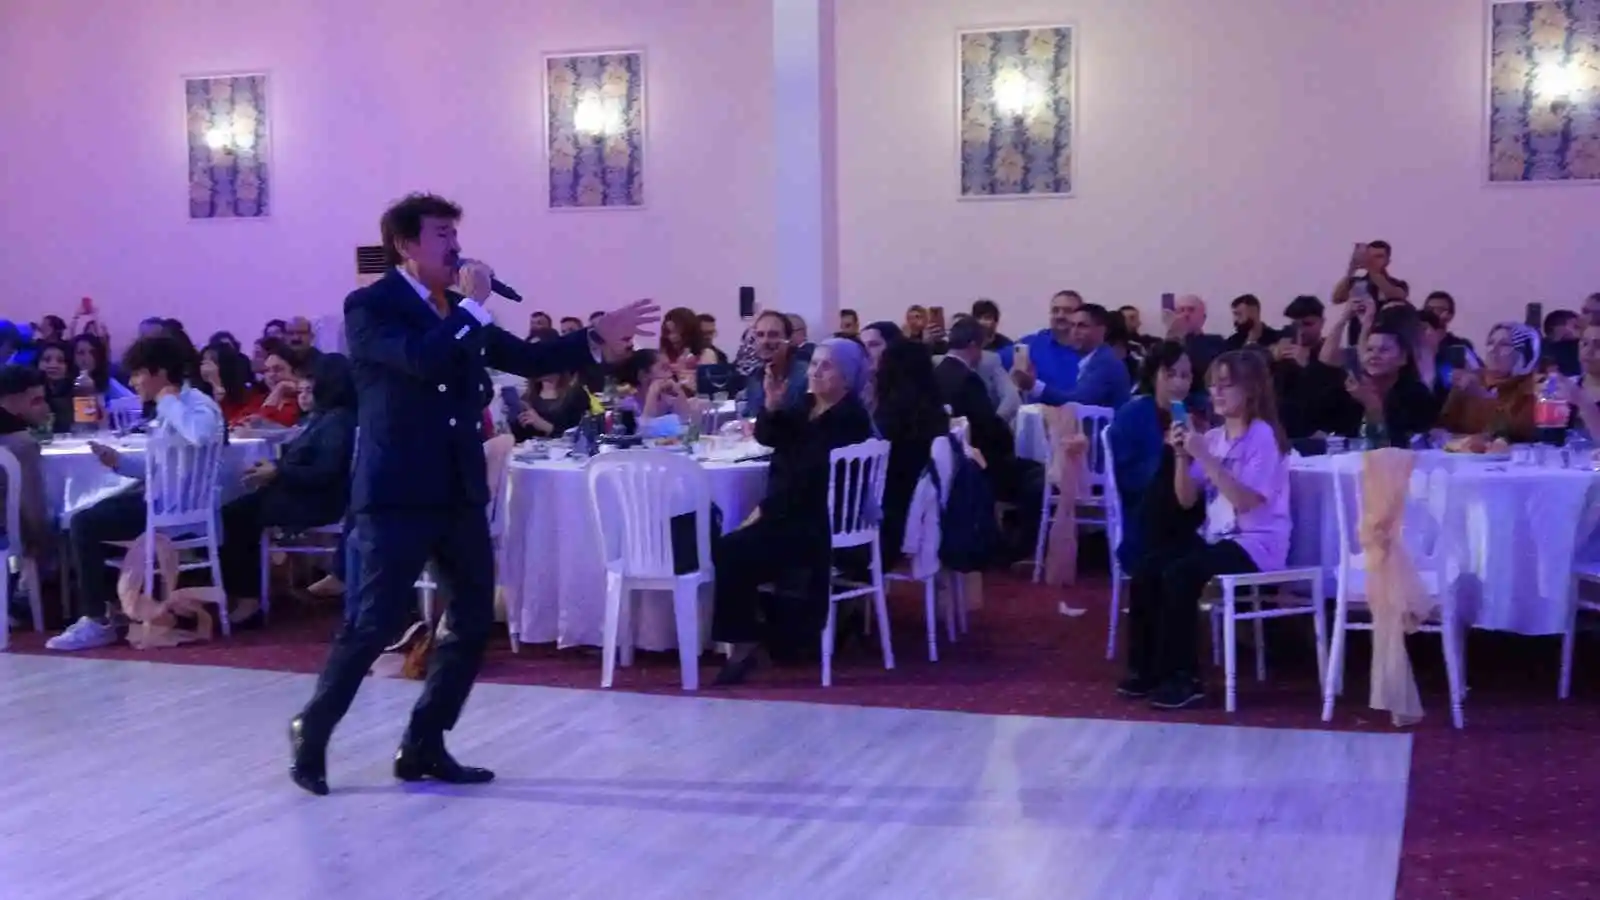 Şair Ahmet Selçuk İlkan sahnede 67. yaşını kutladı
